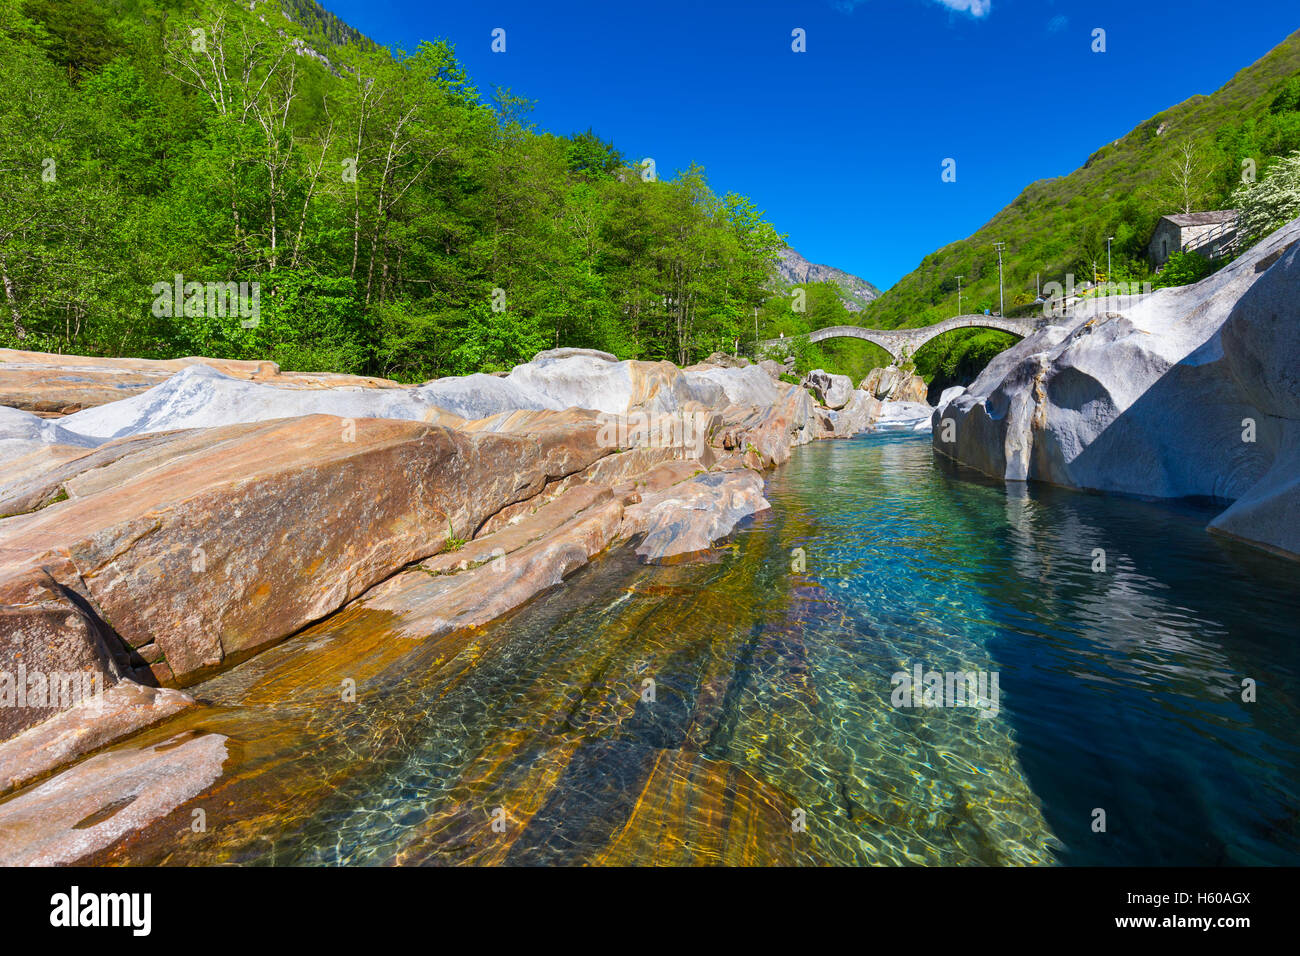 Doppelte steinerne Bogenbrücke am Ponte dei Salti mit Wasserfall, Lavertezzo, Verzascatal, Tessin, Schweiz. Stockfoto